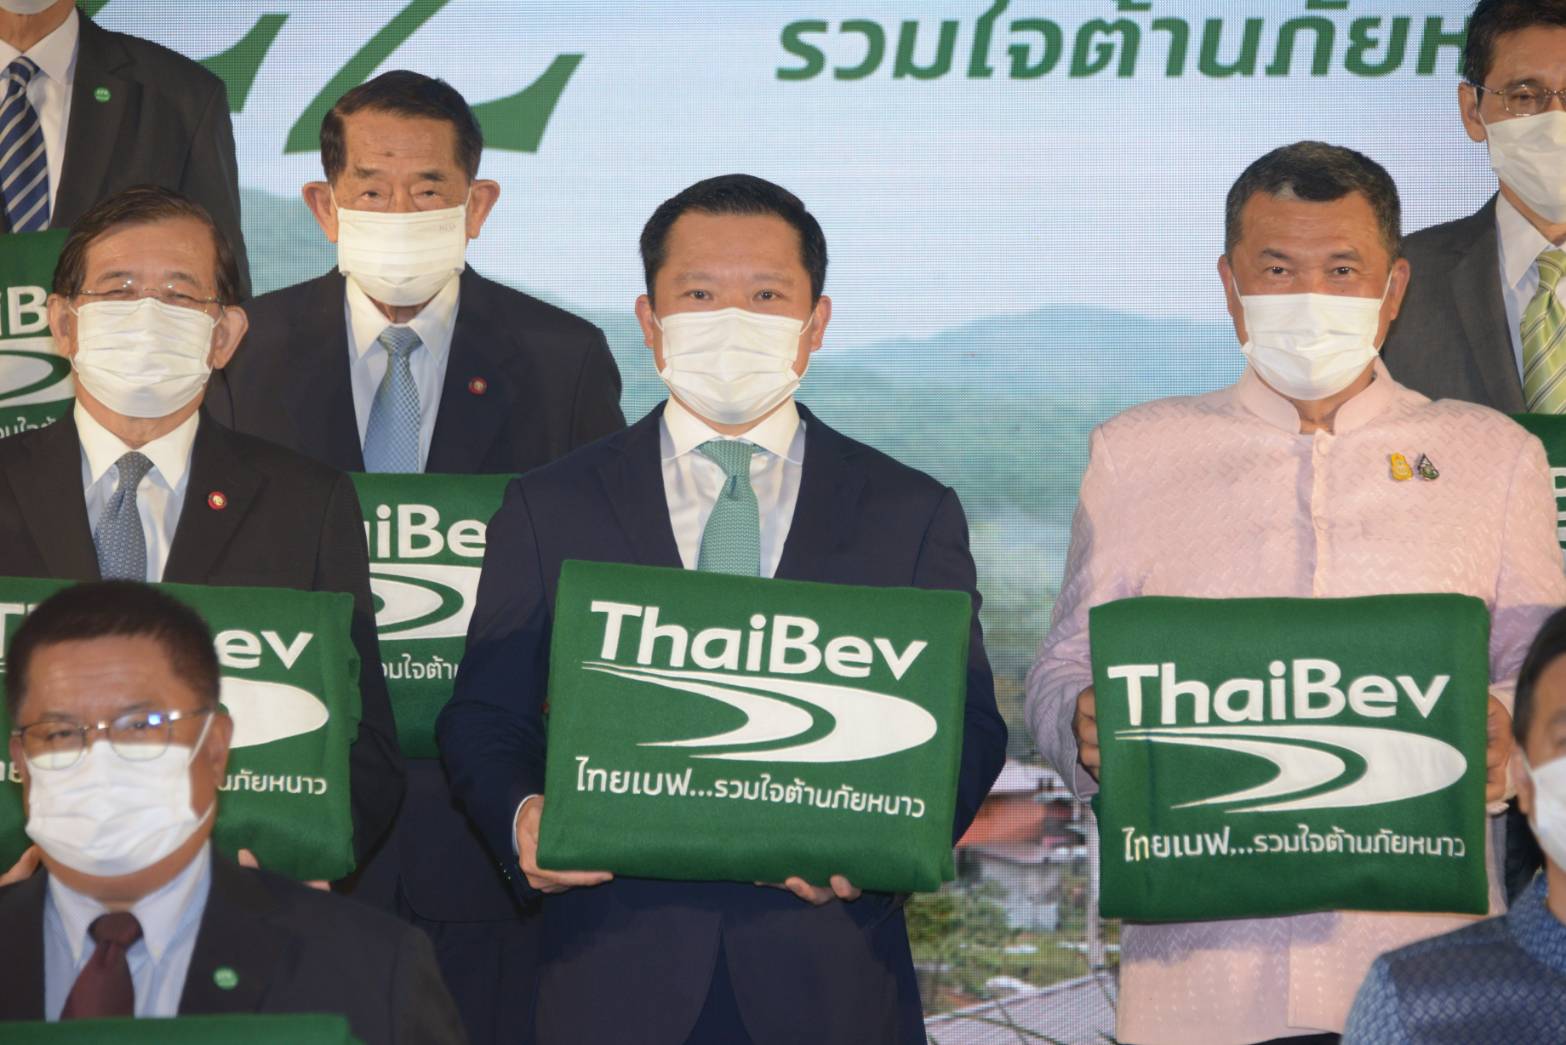 กระทรวงมหาดไทย จับมือ ไทยเบฟ “รวมใจต้านภัยหนาว”  สู่ปีที่ 22